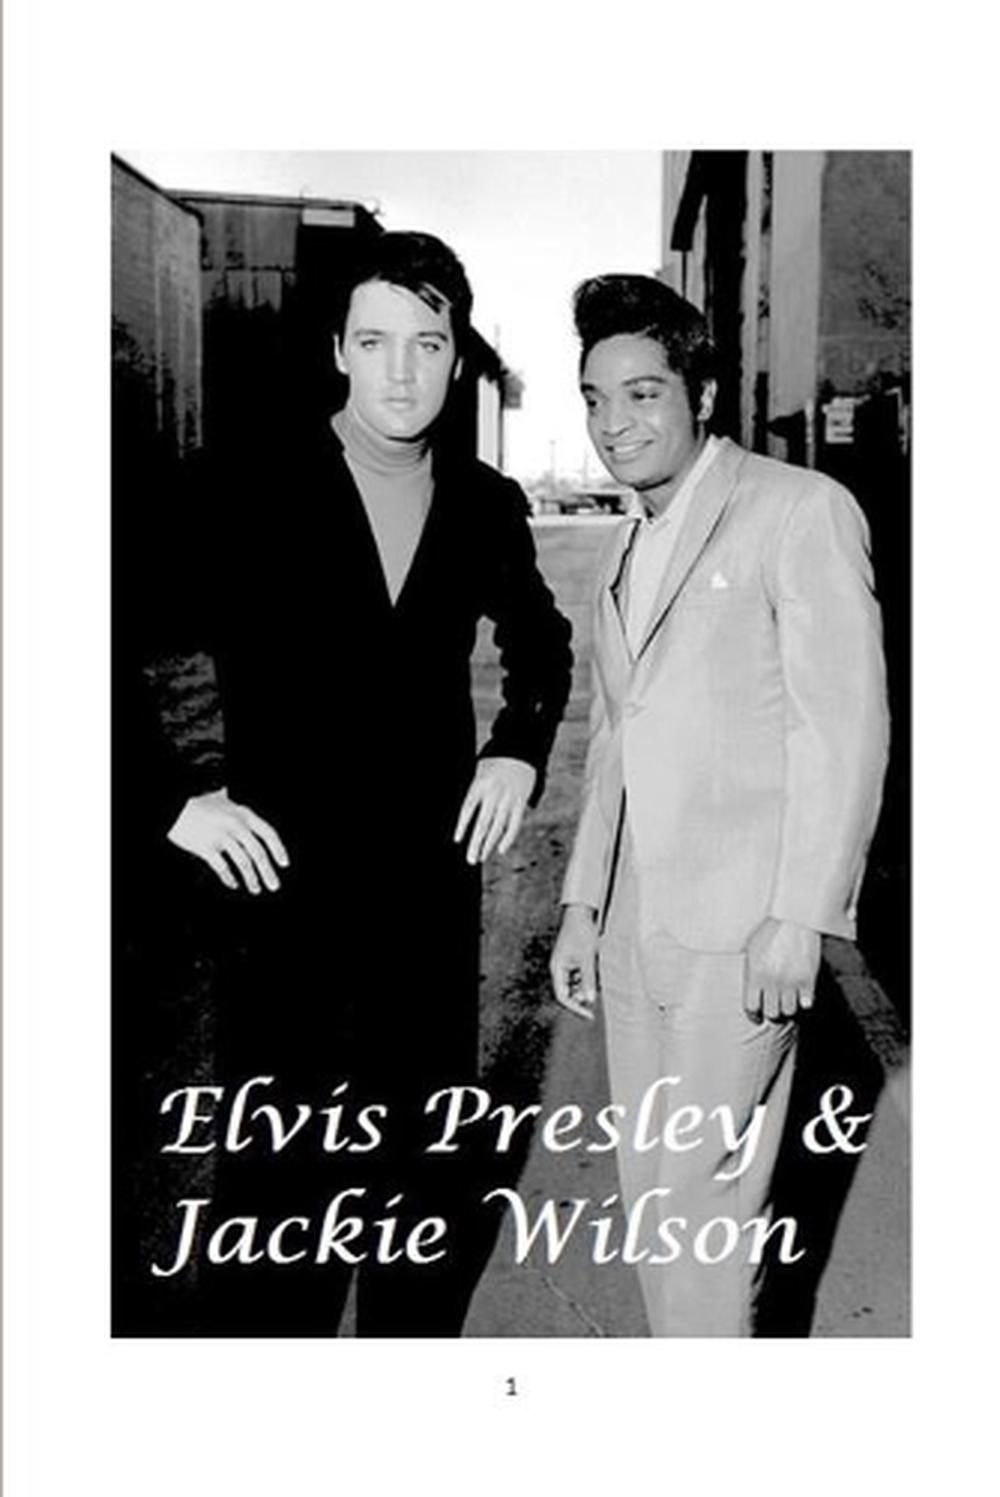 The Black Elvis - Jackie Wilson by Doug Carter